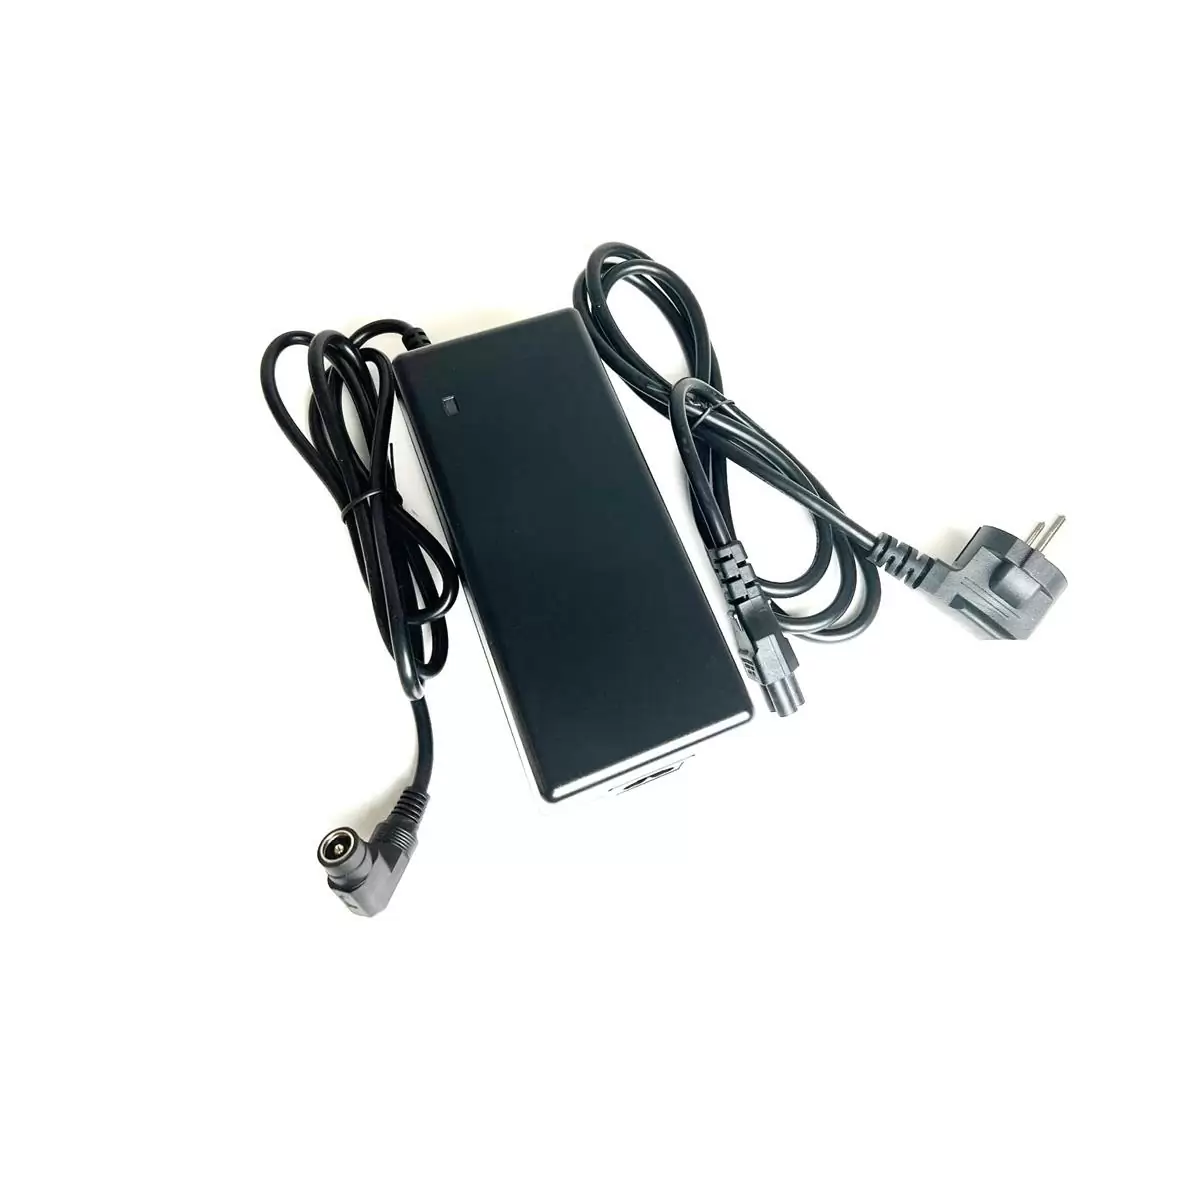 Chargeur de batterie ebike 240v pour ebike Afrodite T250 - image